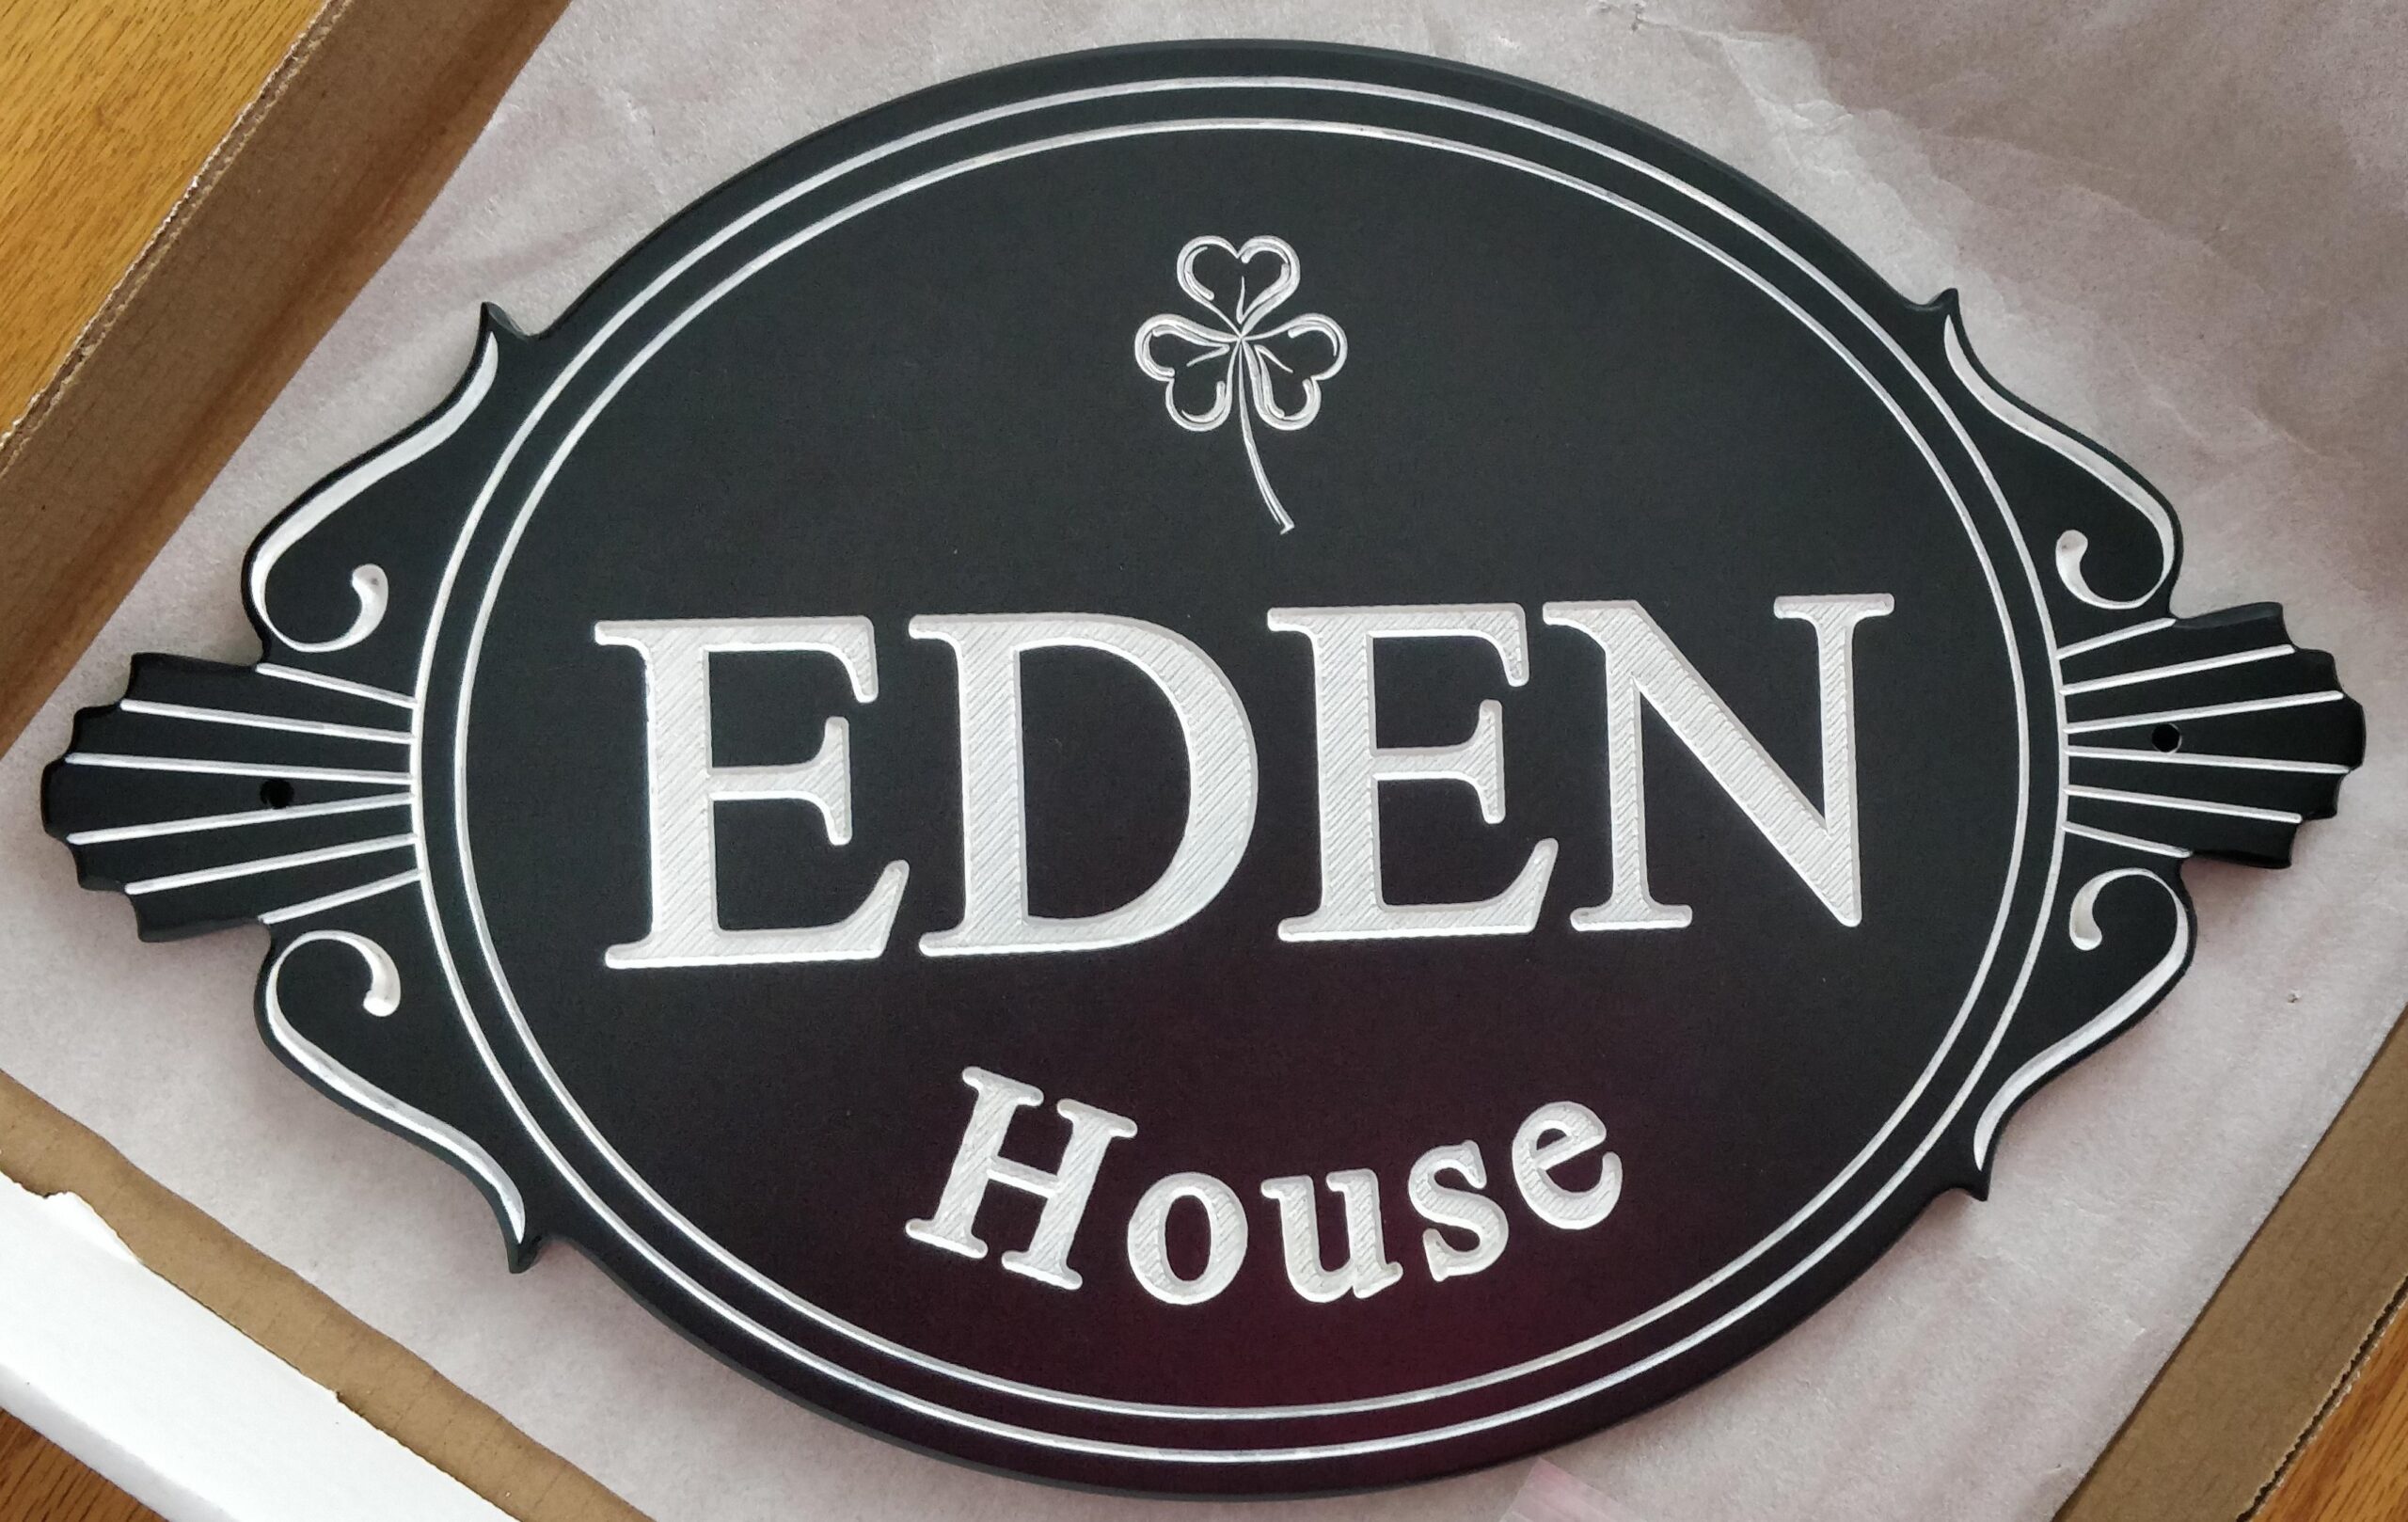 EdenHouse